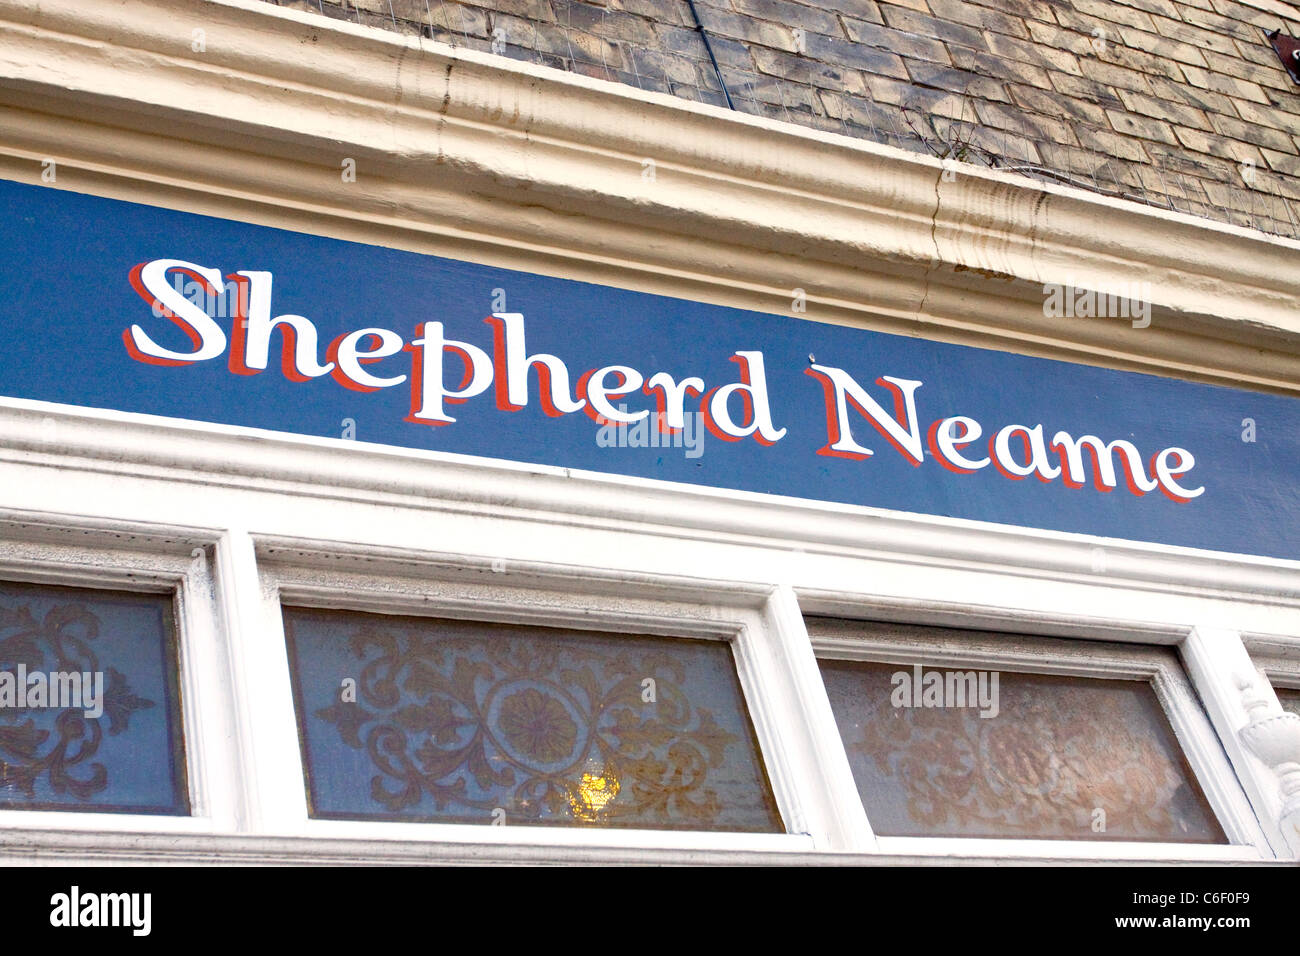 Shepherd Neame Kent Stock Photos & Shepherd Neame Kent ...